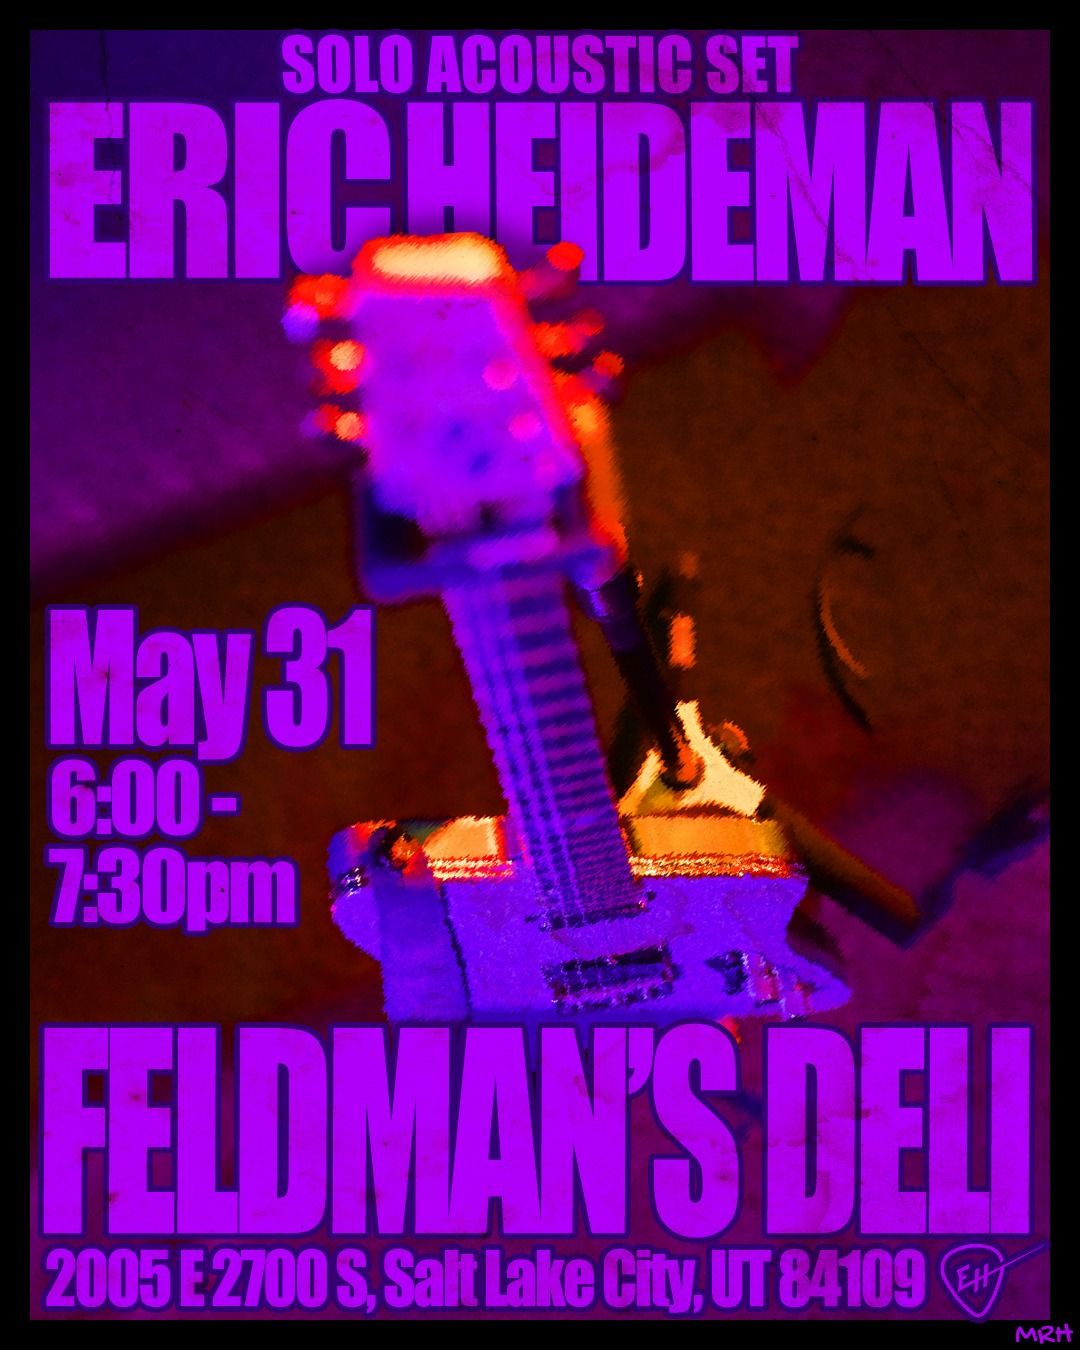 Eric Heideman @ Feldman's Deli